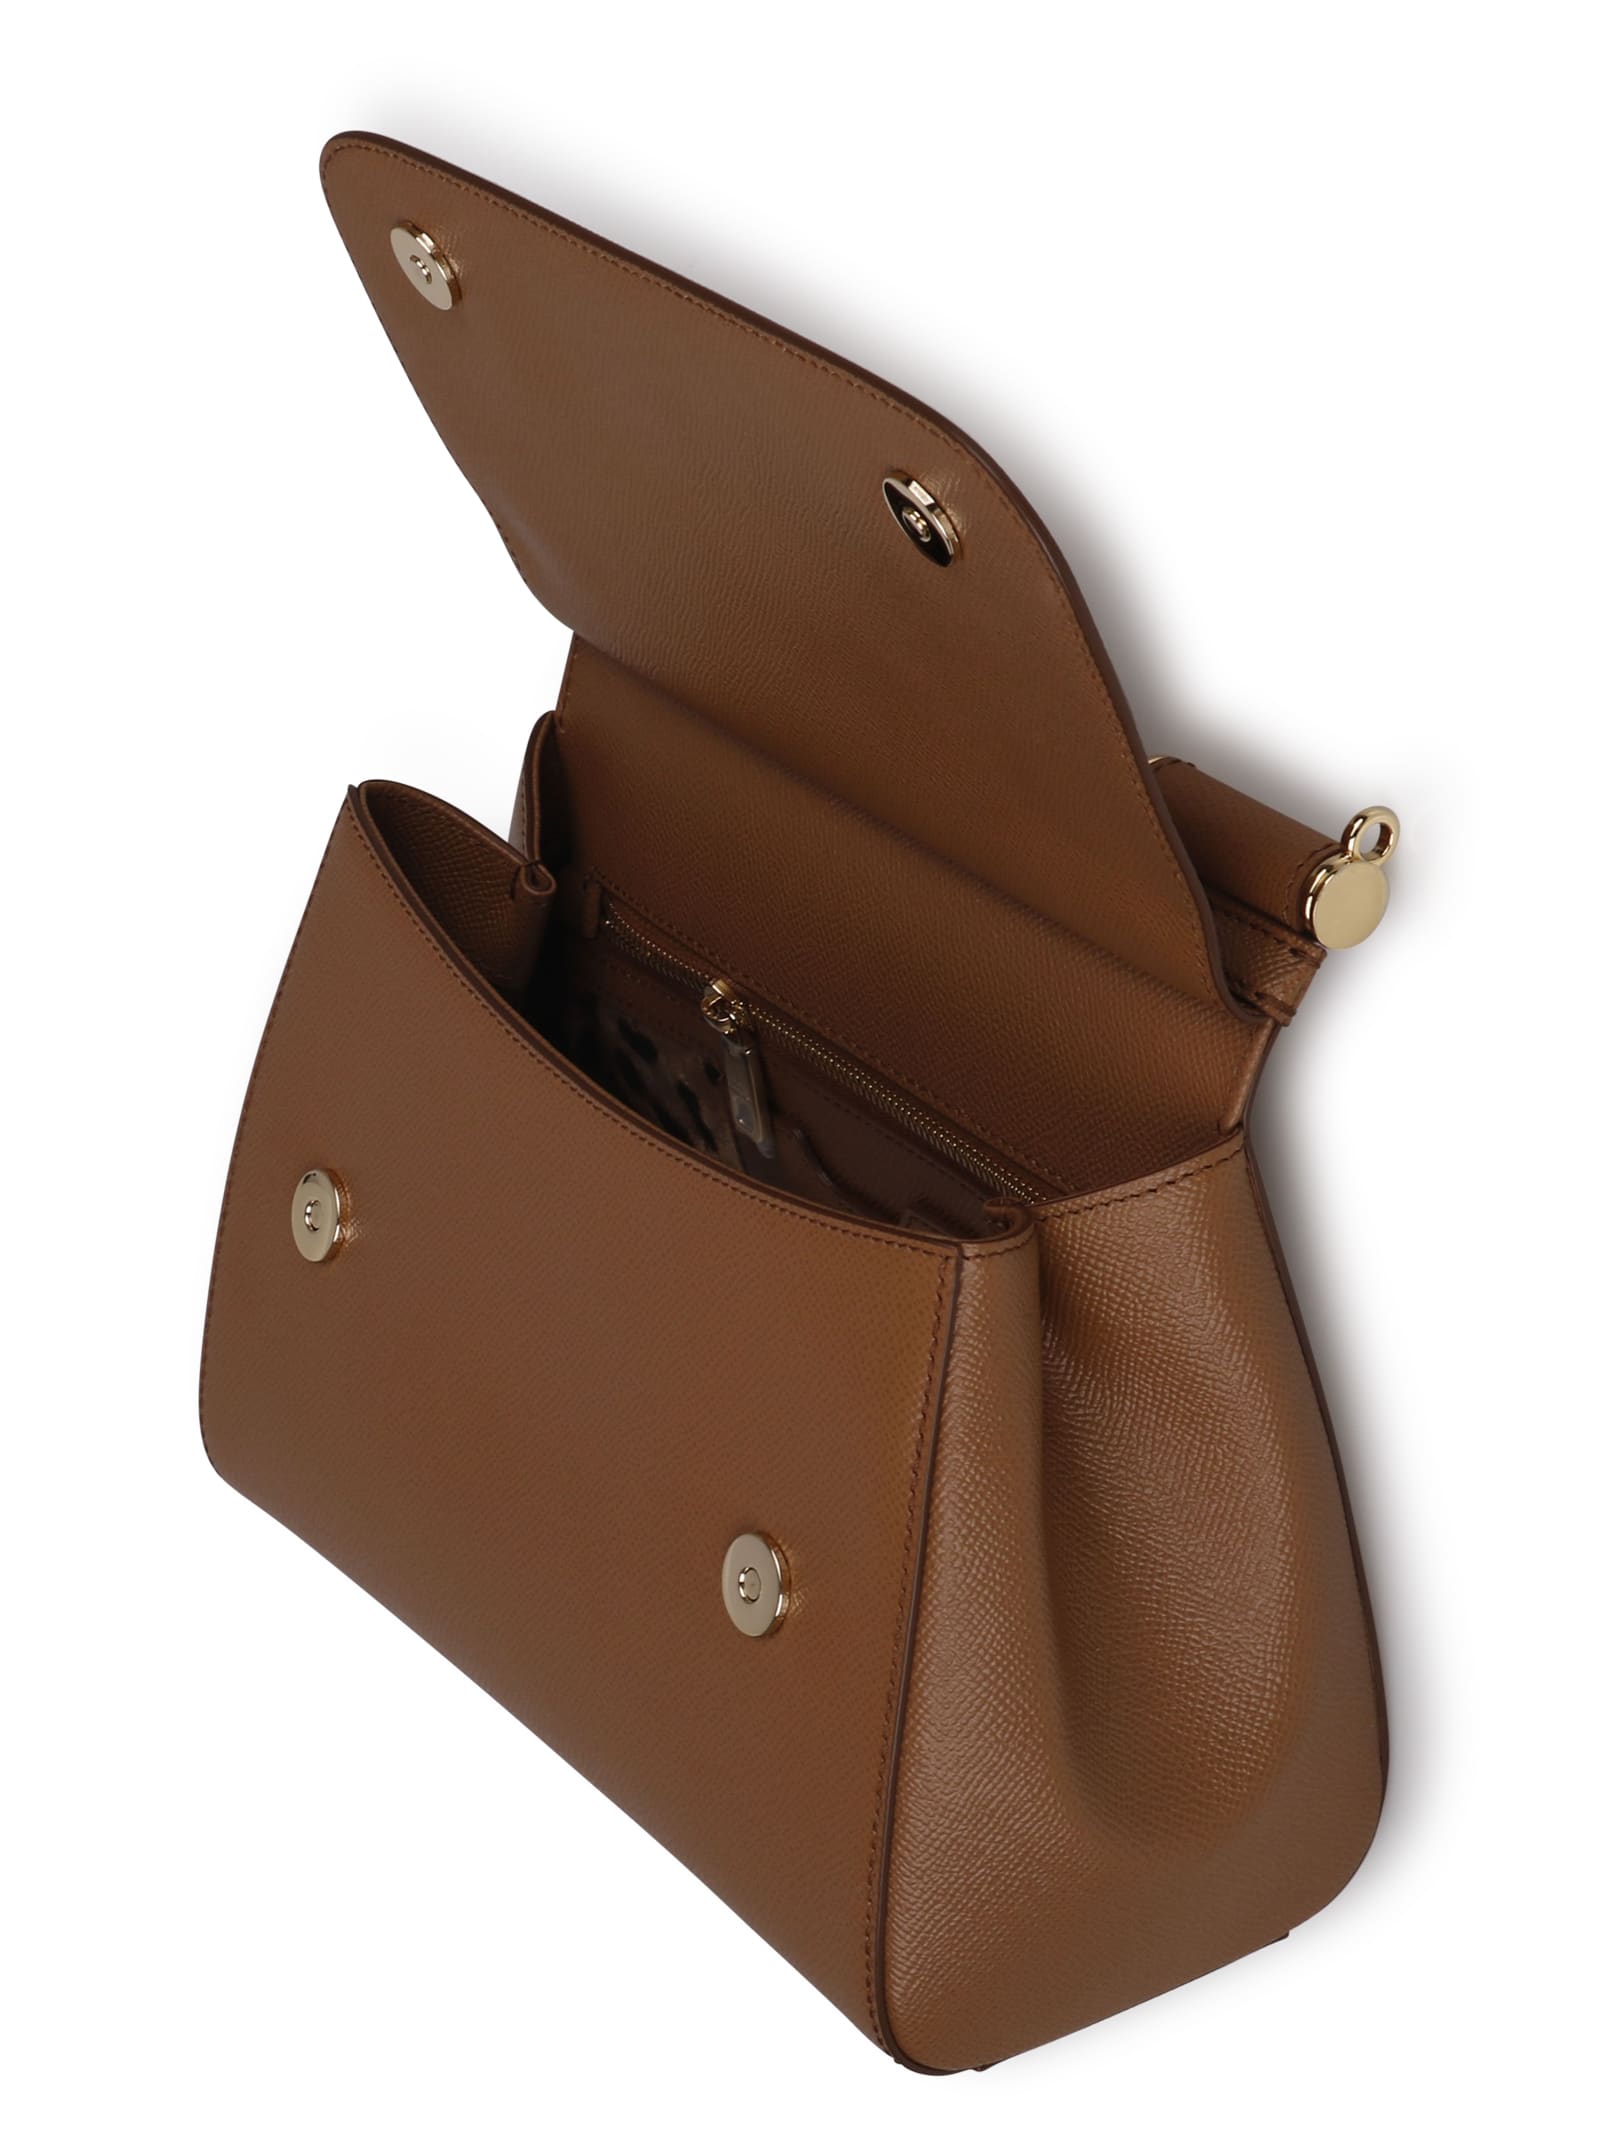 Dolce & Gabbana Sicily Shoulder bag 362982